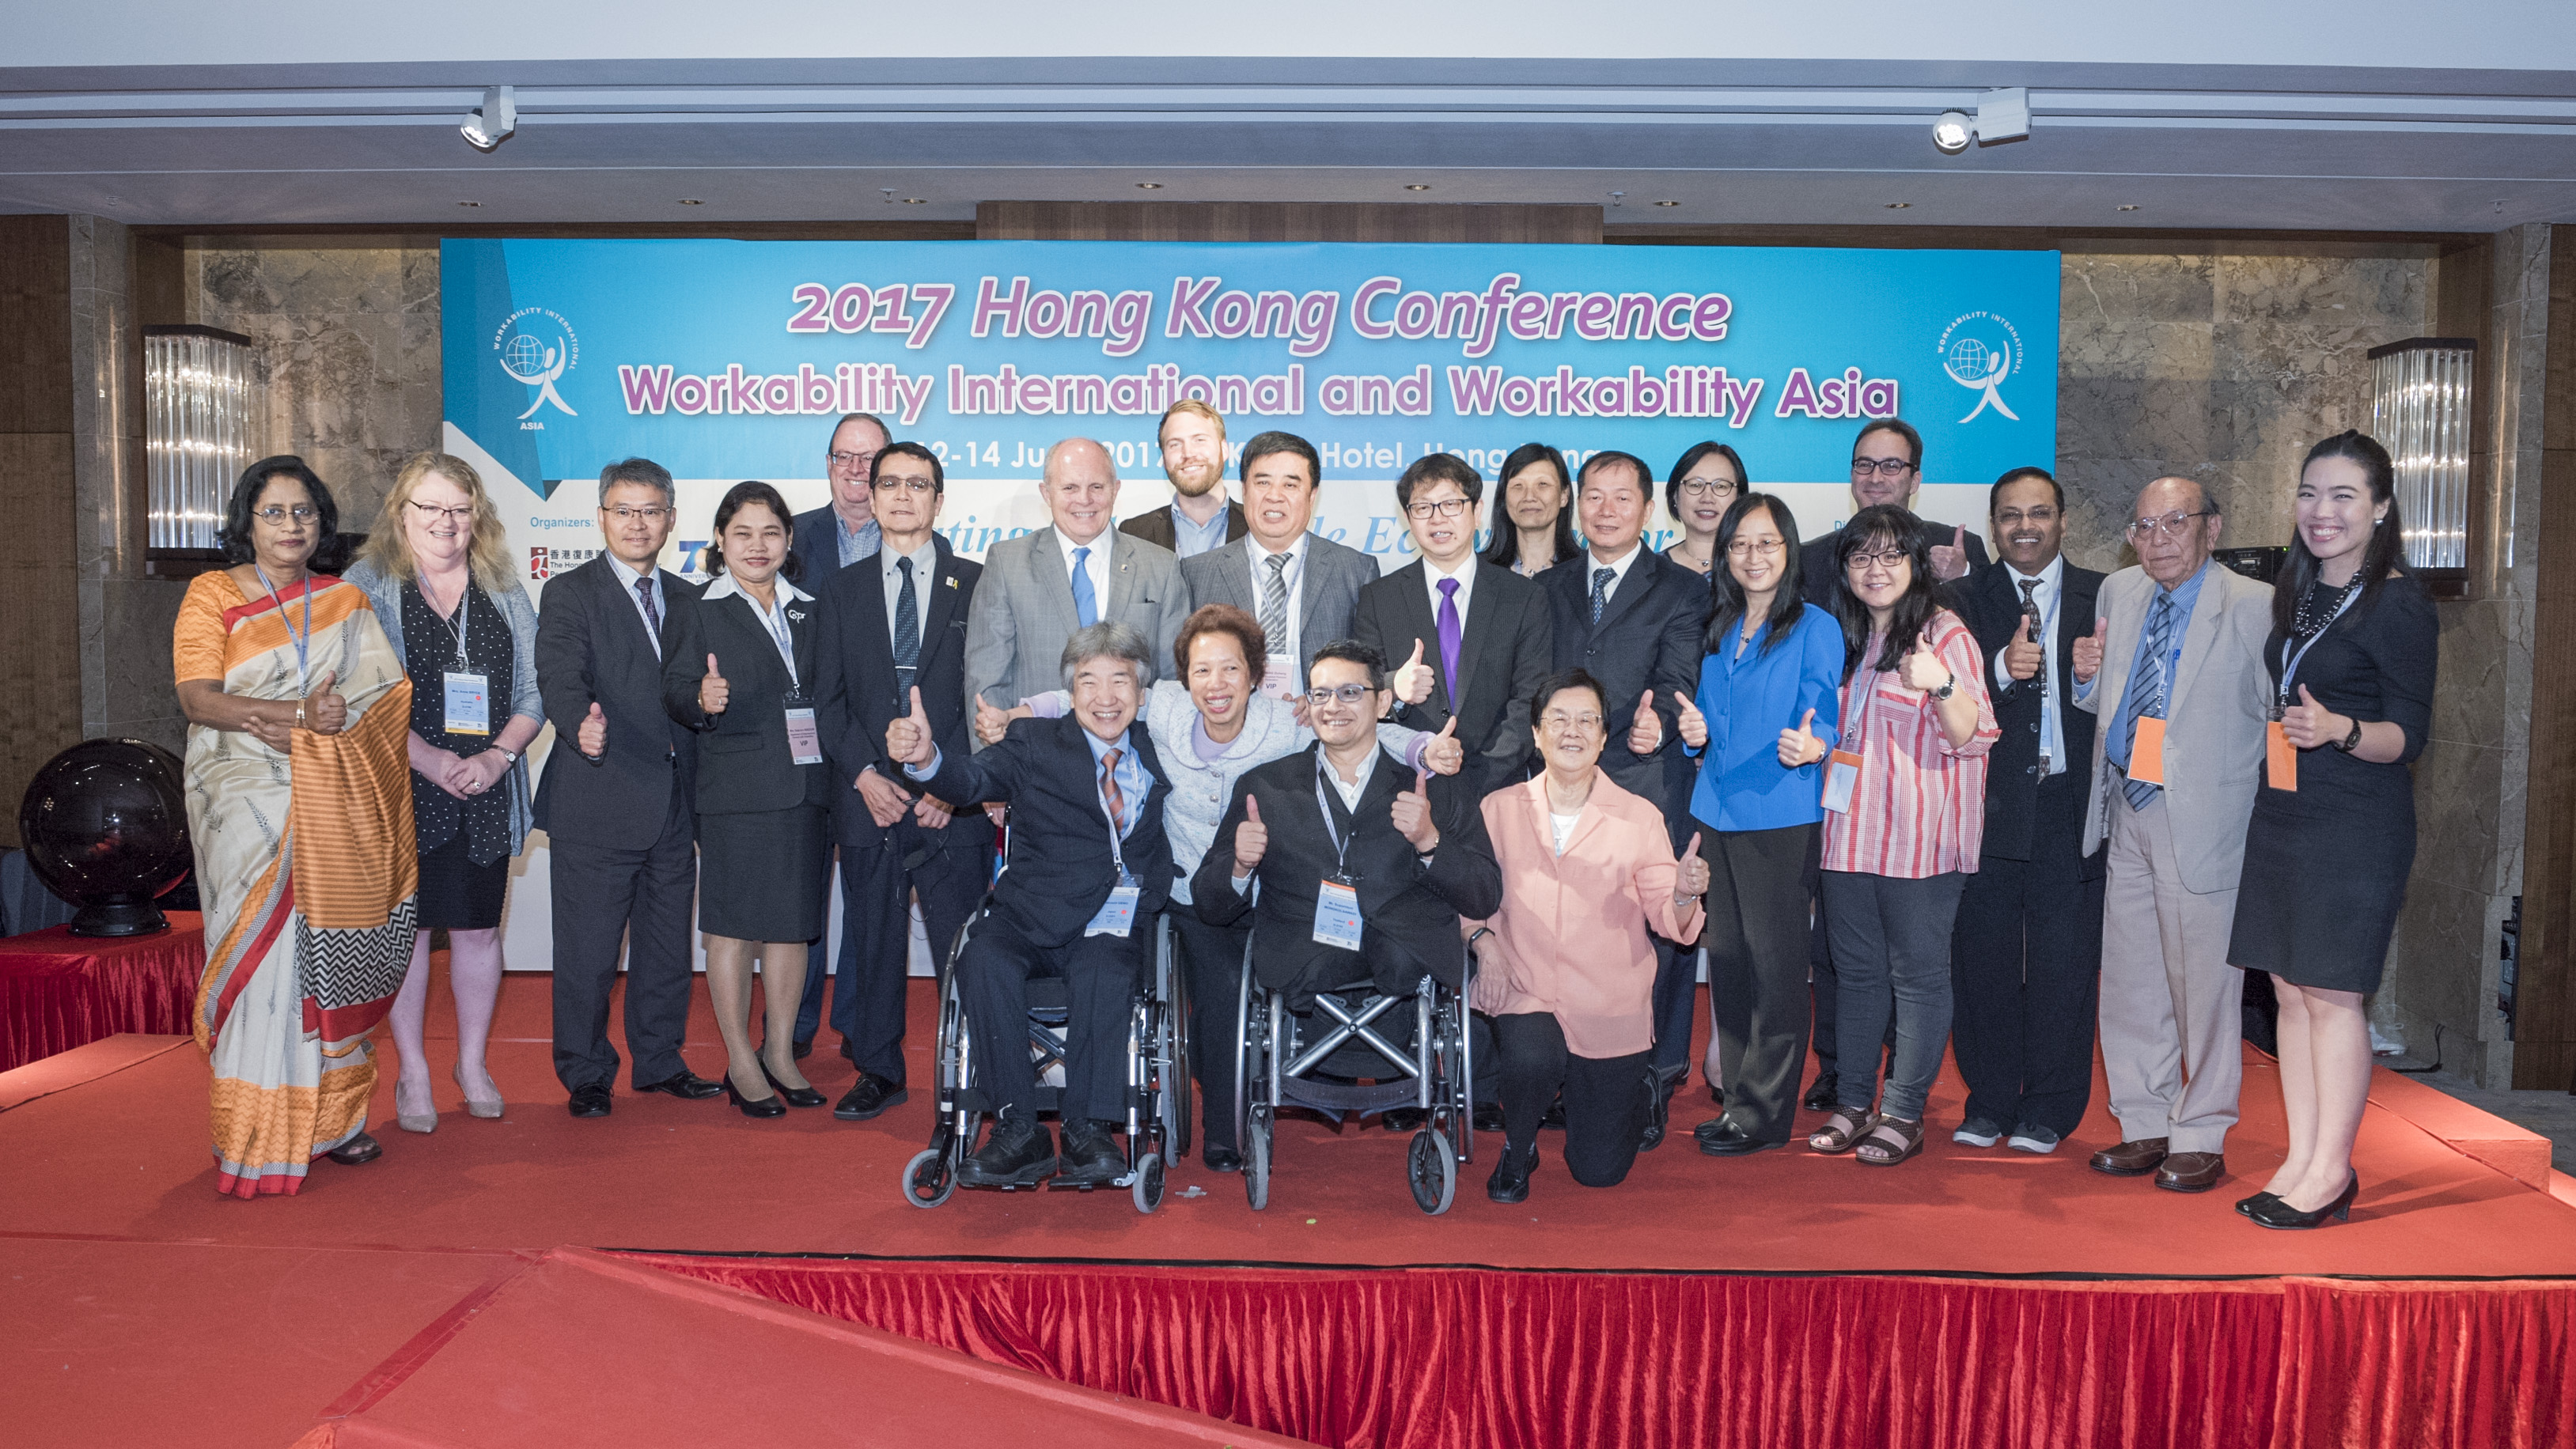 萧伟强出席由香港复康联会及香港社会服务联会主办的2017年香港会议－－国际工作组织及亚洲工作组织国际会议。图示萧伟强（第二排右七）与一众与会者合照。